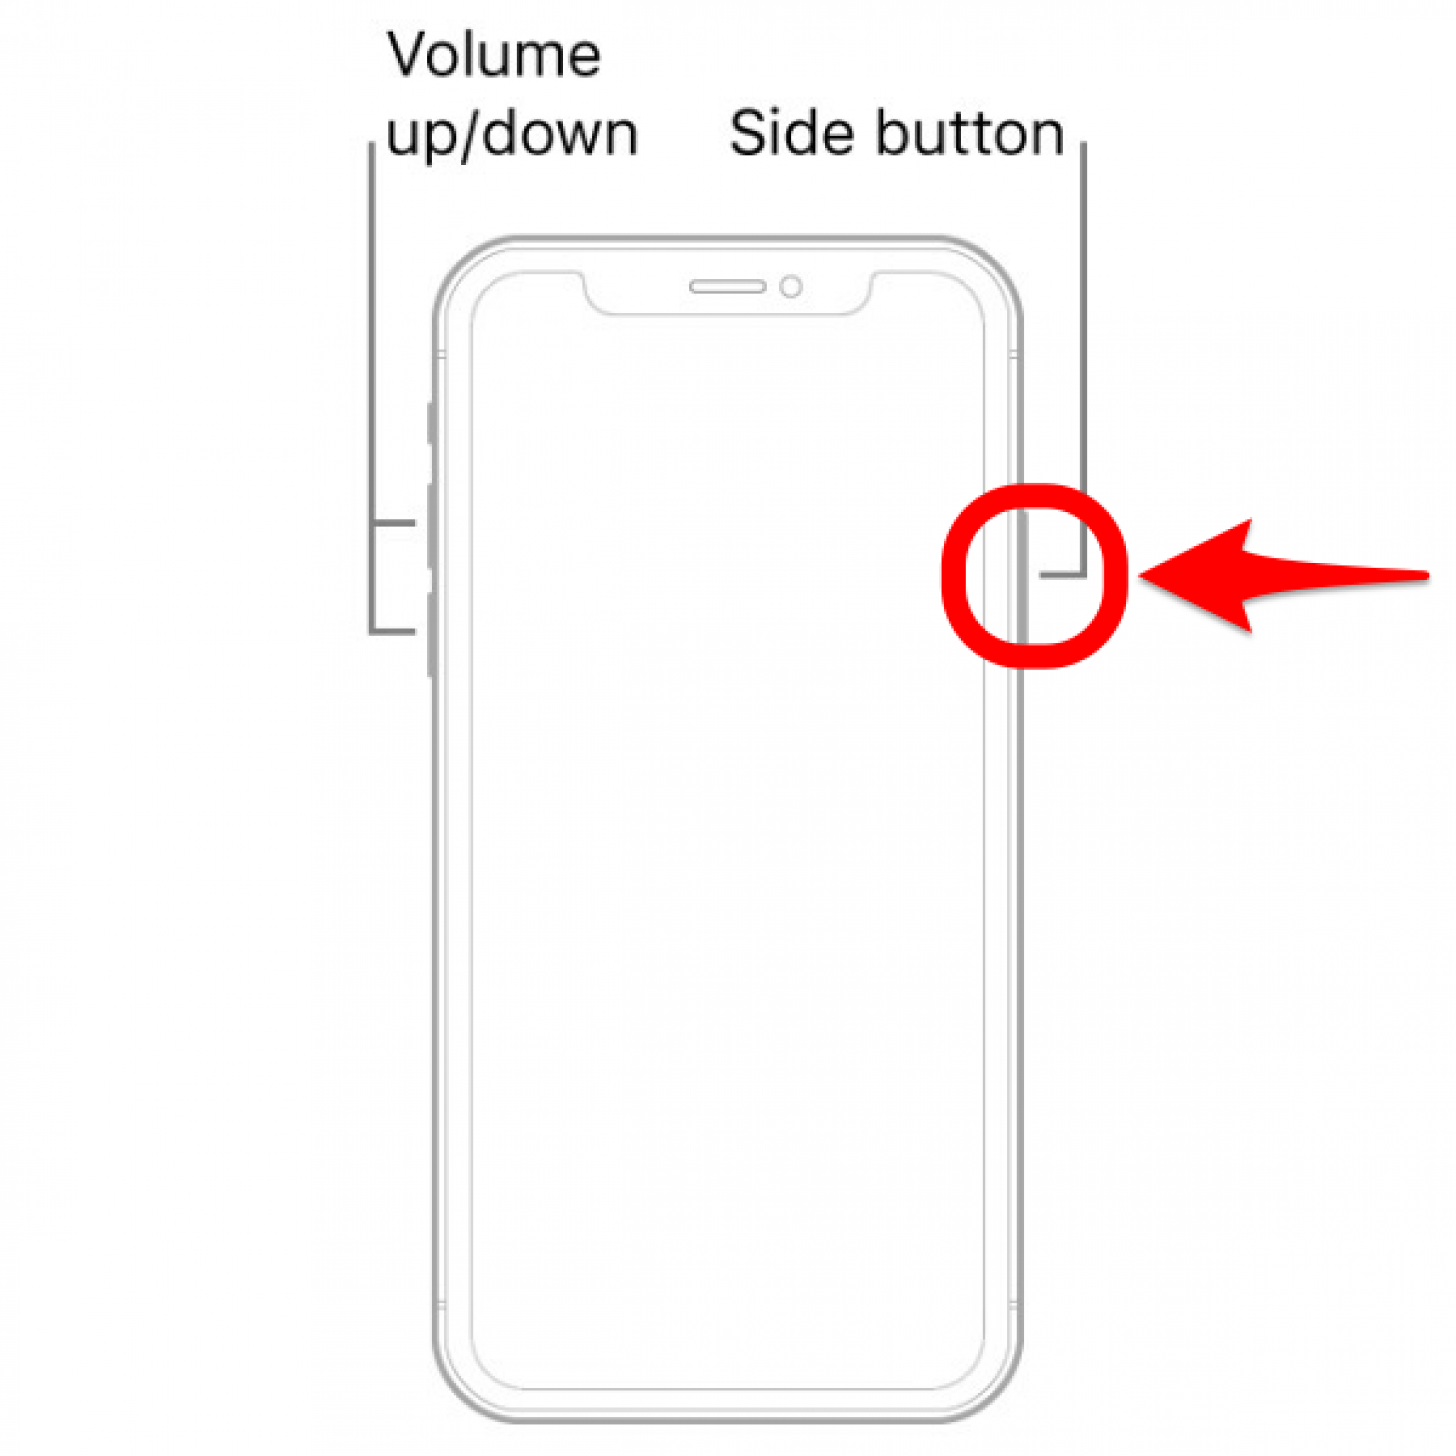 Mantenga presionado el botón lateral: cómo reiniciar el iphone xs max